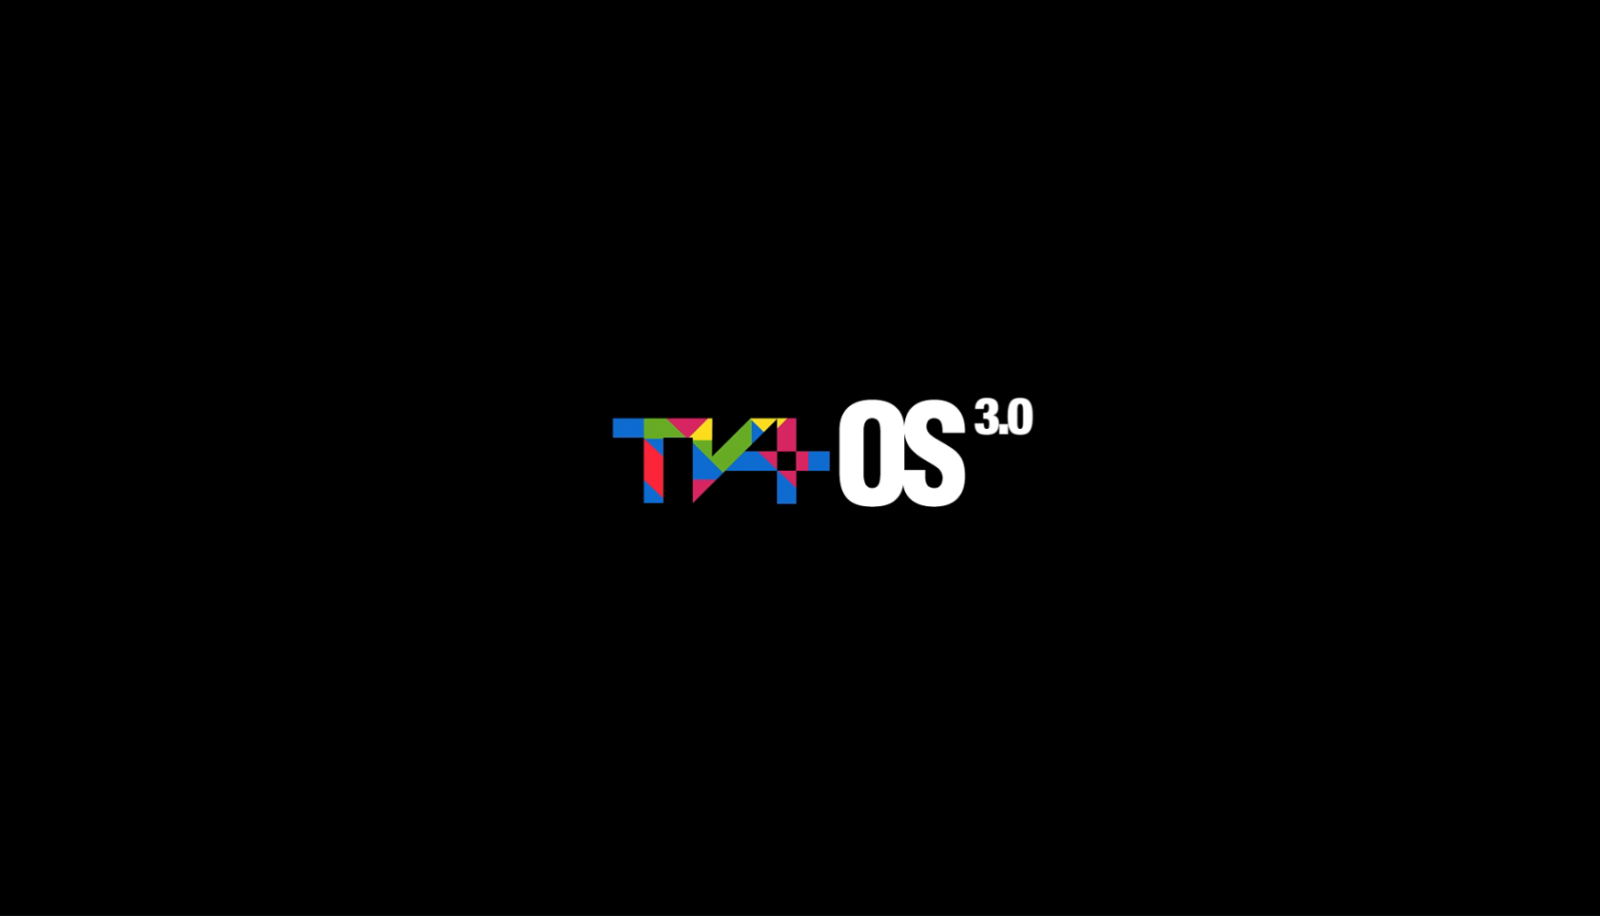 TV+ OS 3.0